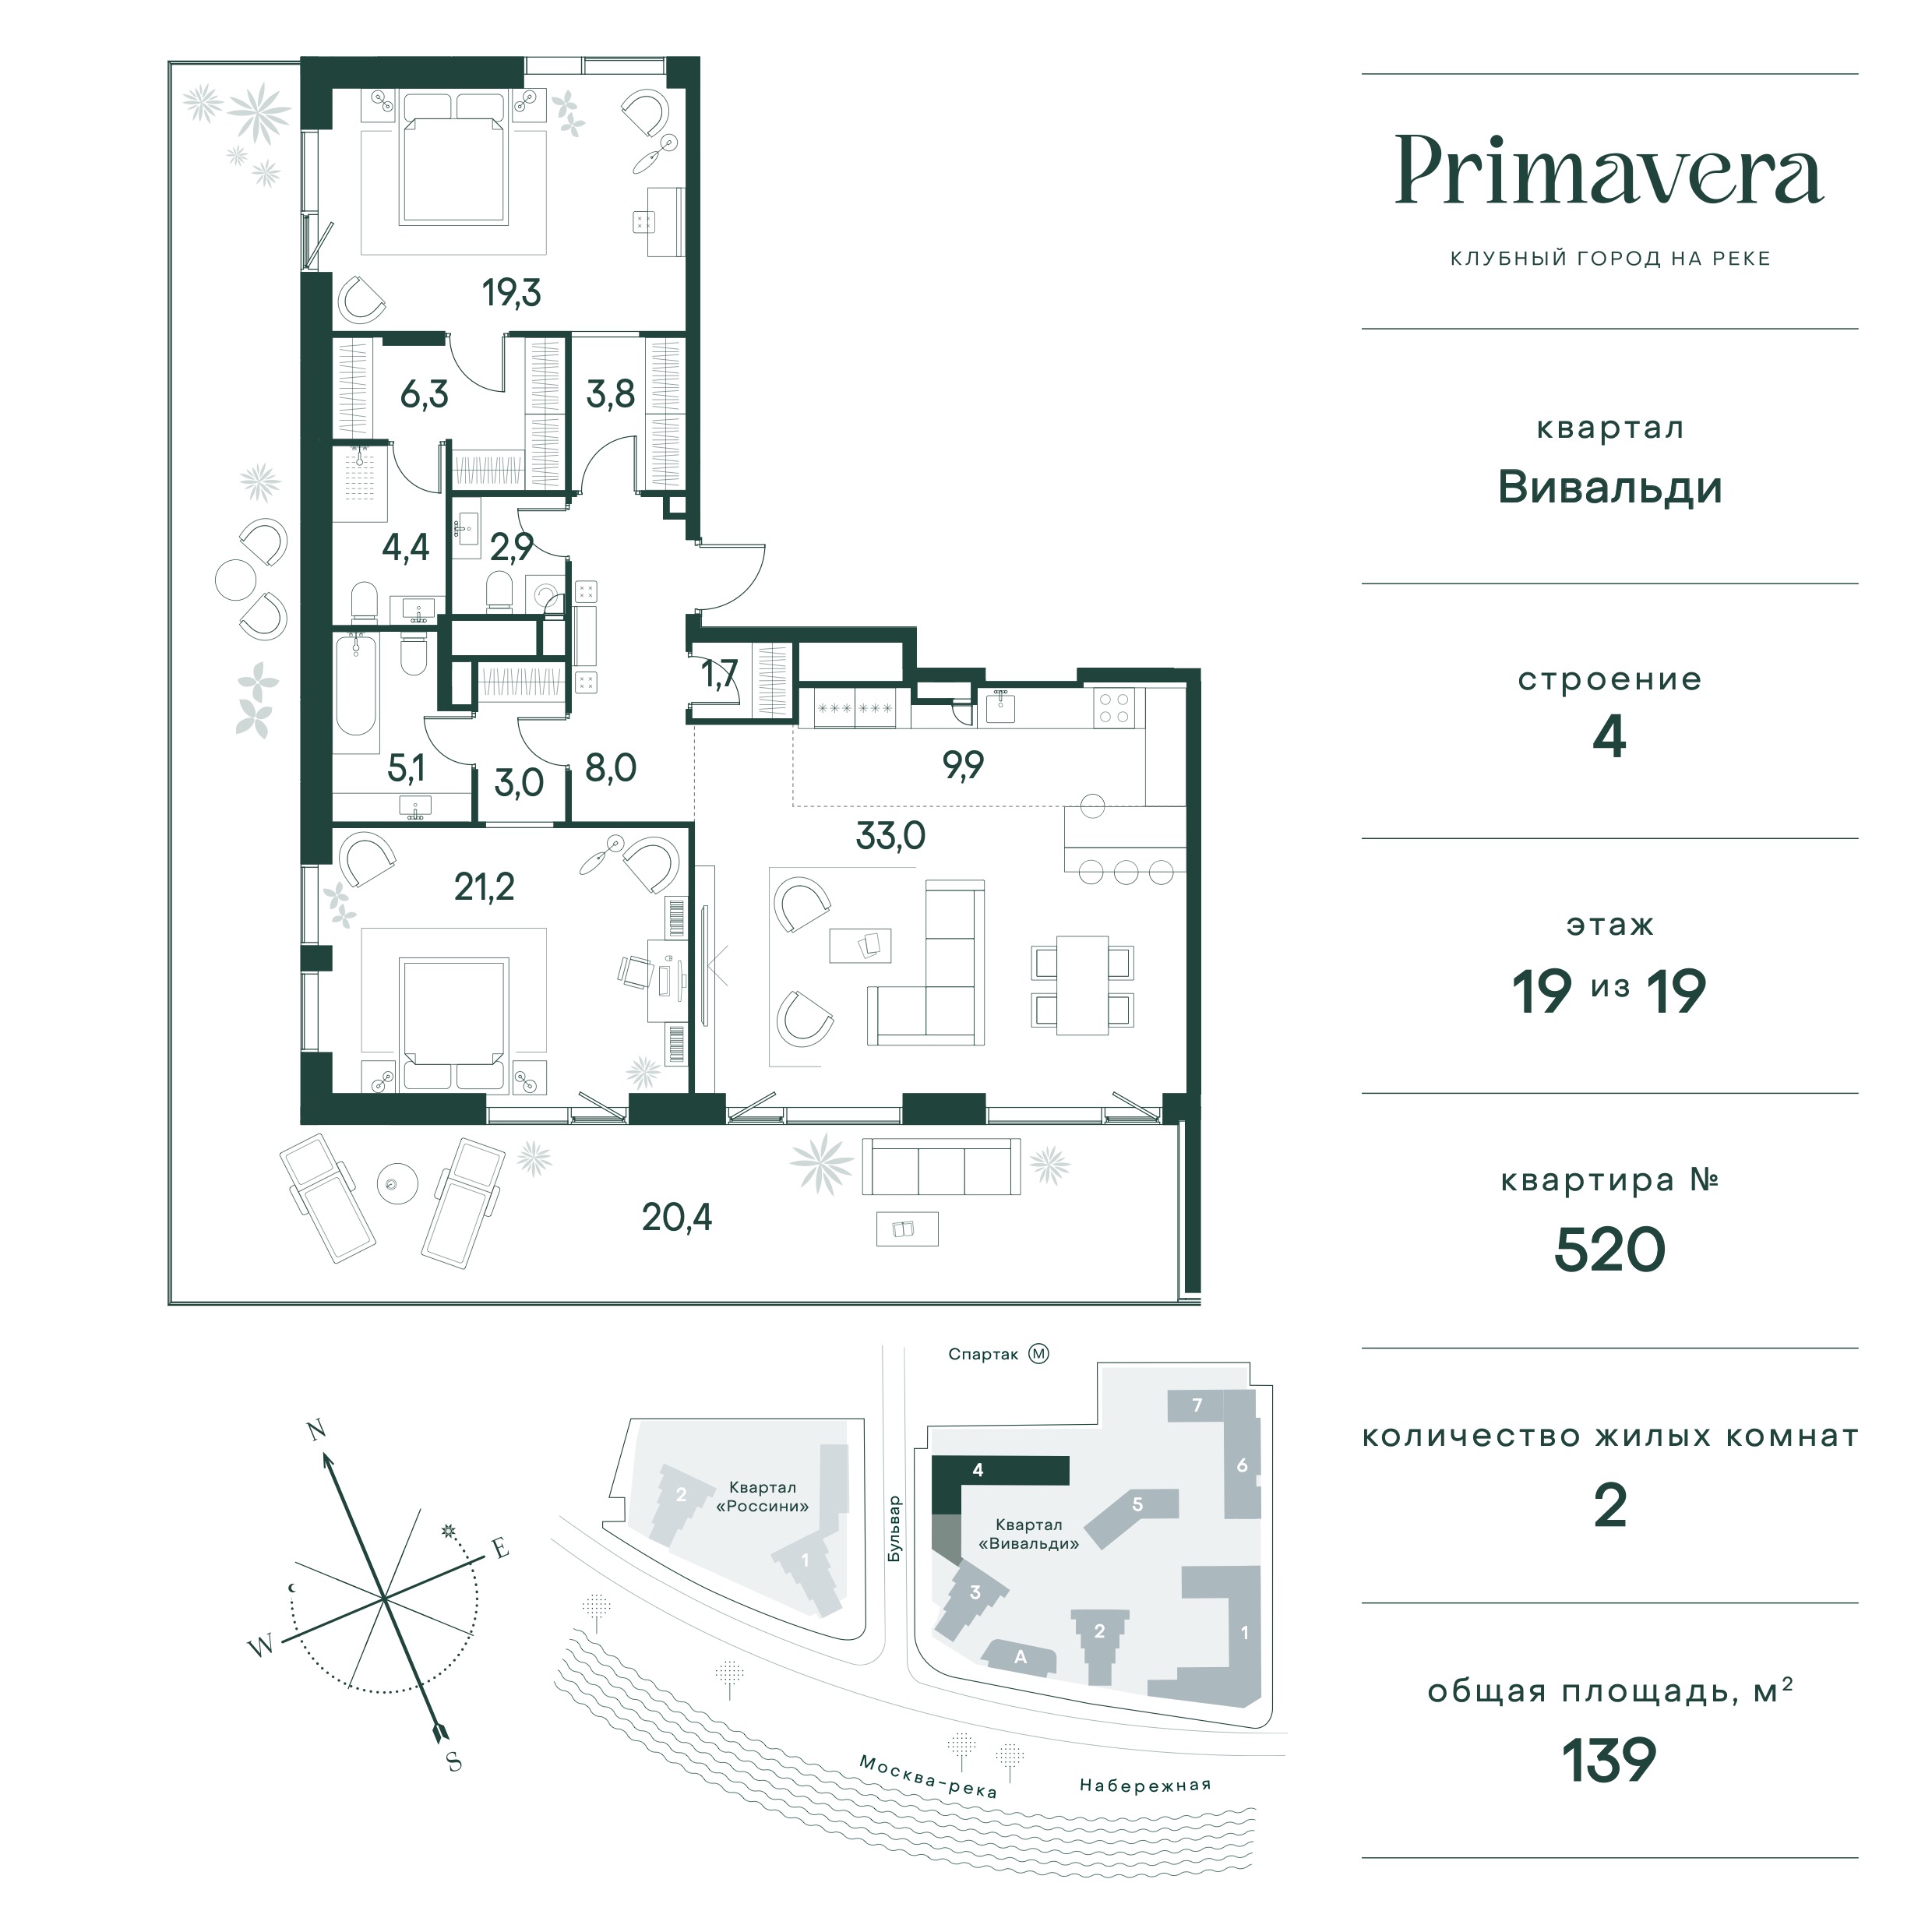 Планировка Квартира с 2 спальнями 139 м2 в ЖК Primavera